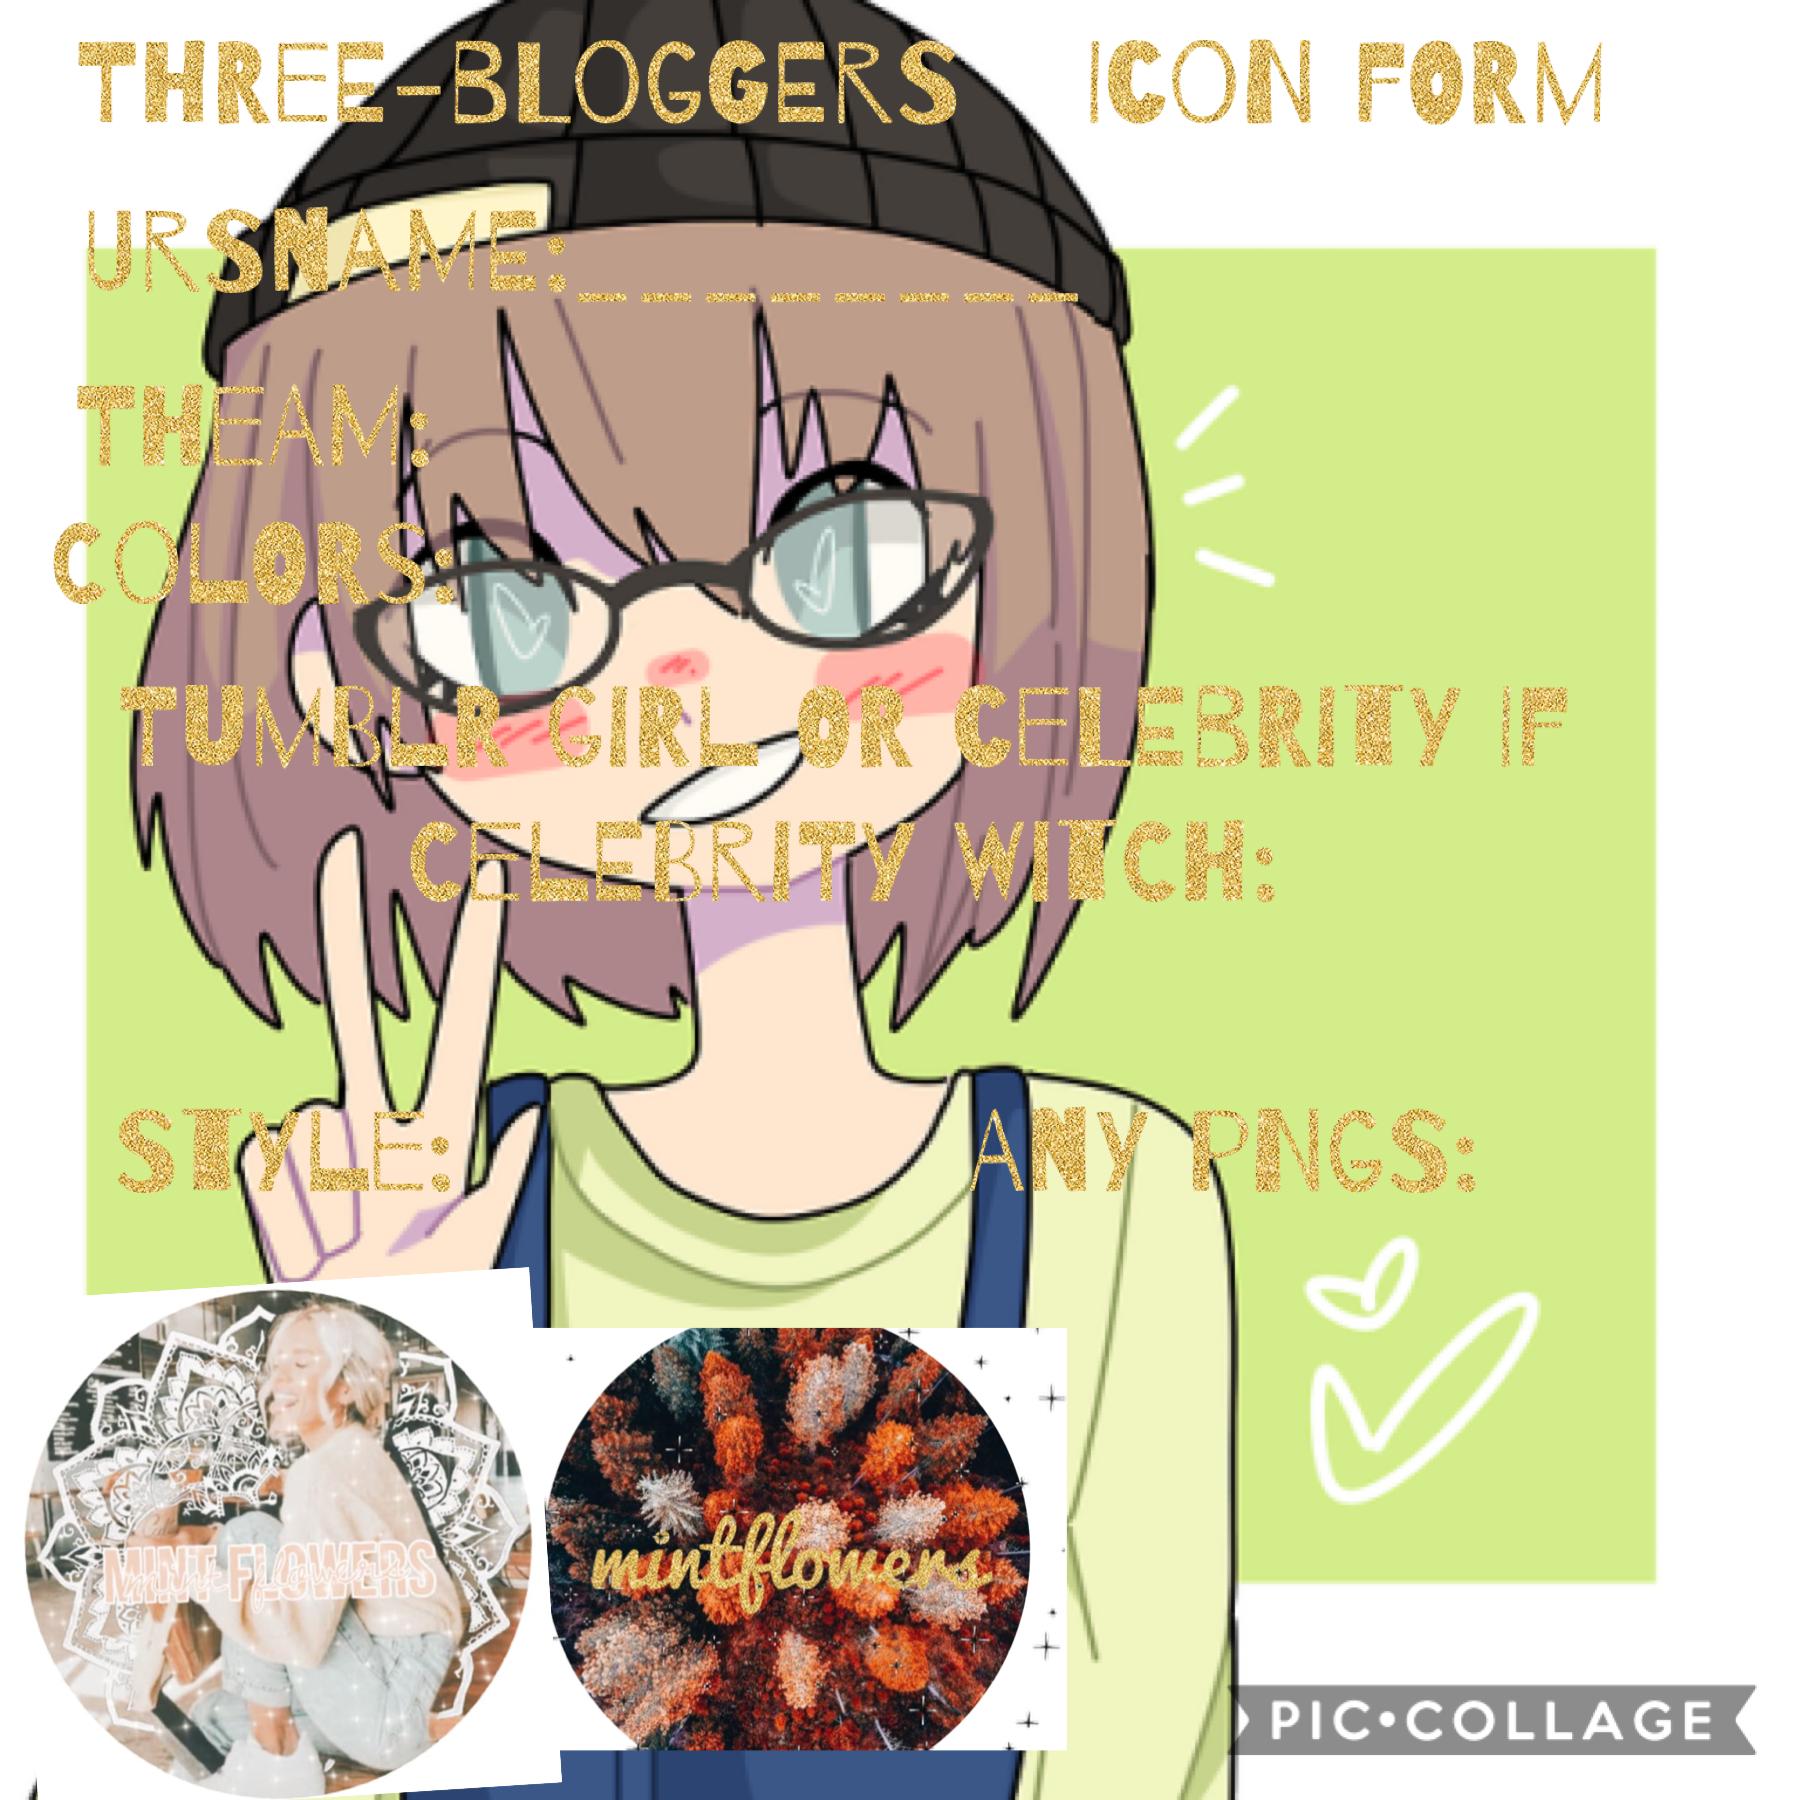 It’s mintflowers icon form